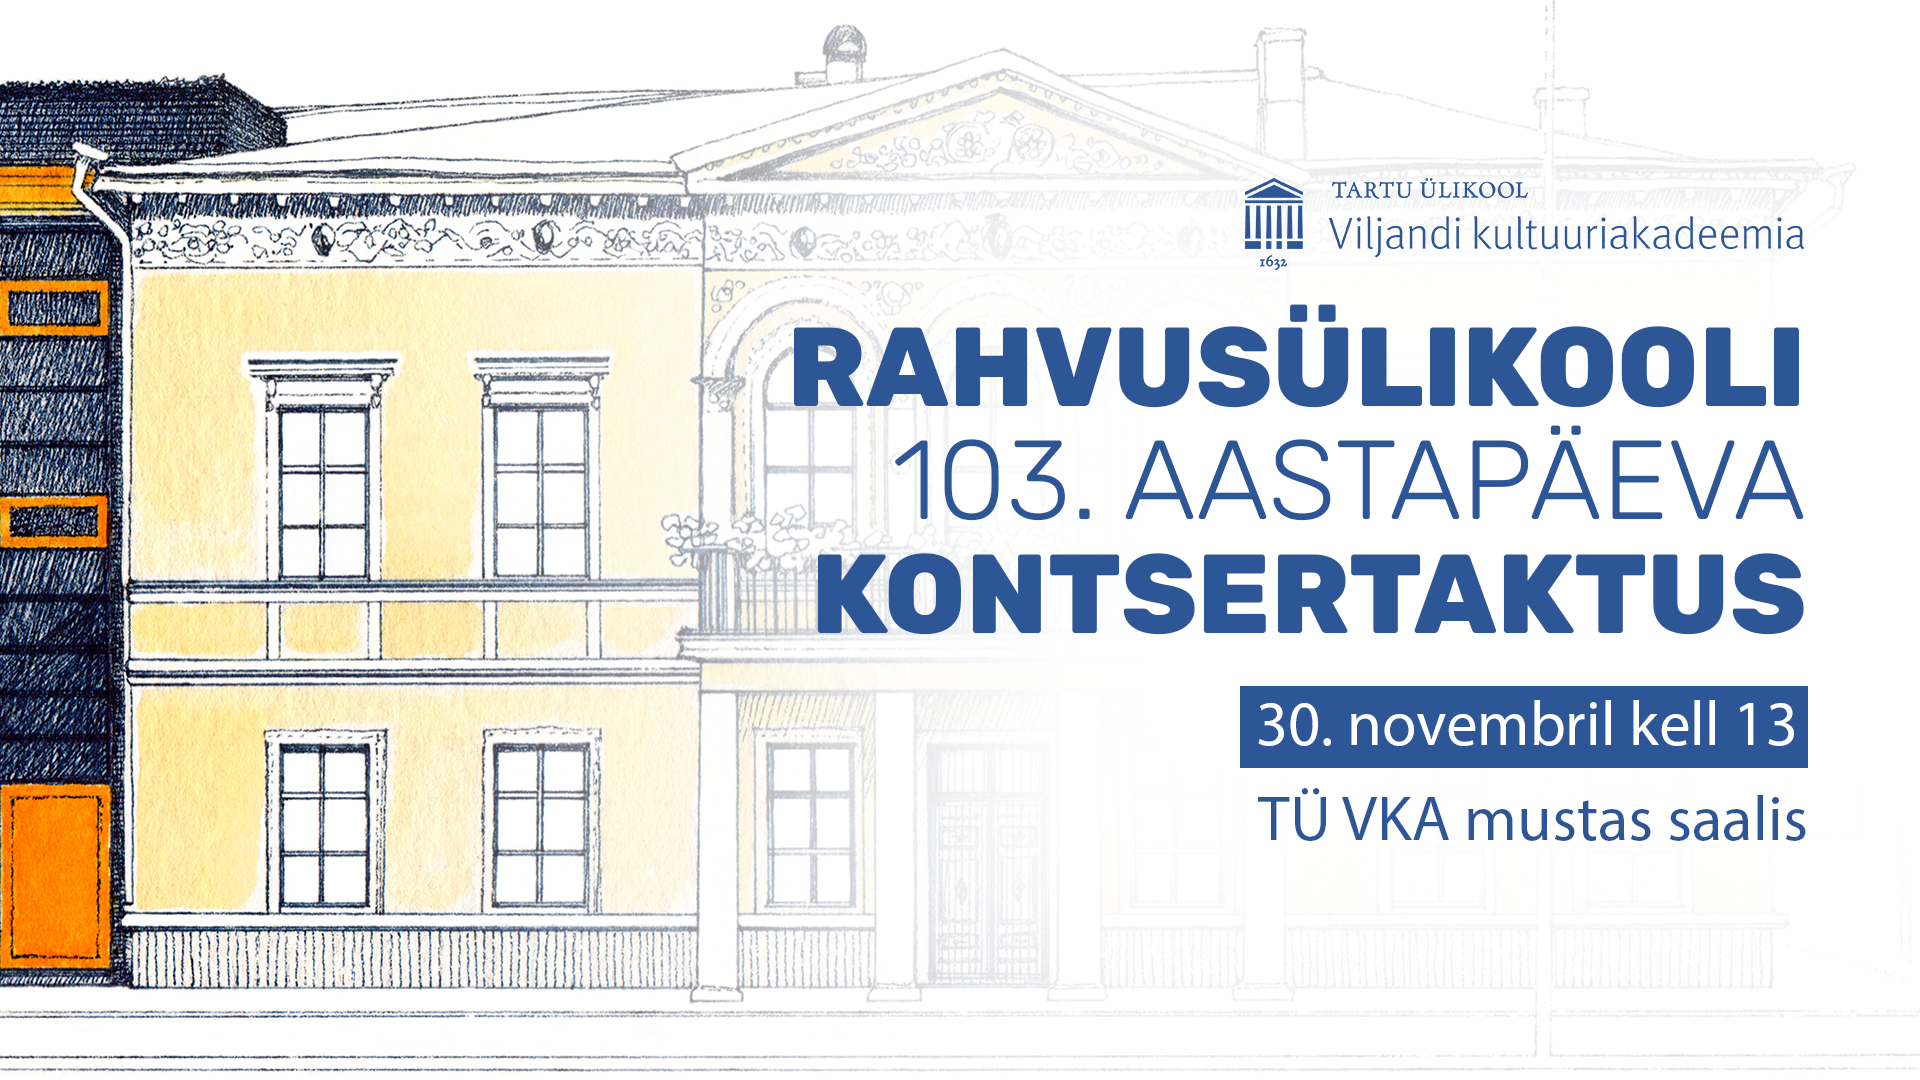 Rahvusülikooli 103. aastapäeva kontsertaktus - Tartu Ülikooli Viljandi kultuuriakadeemia